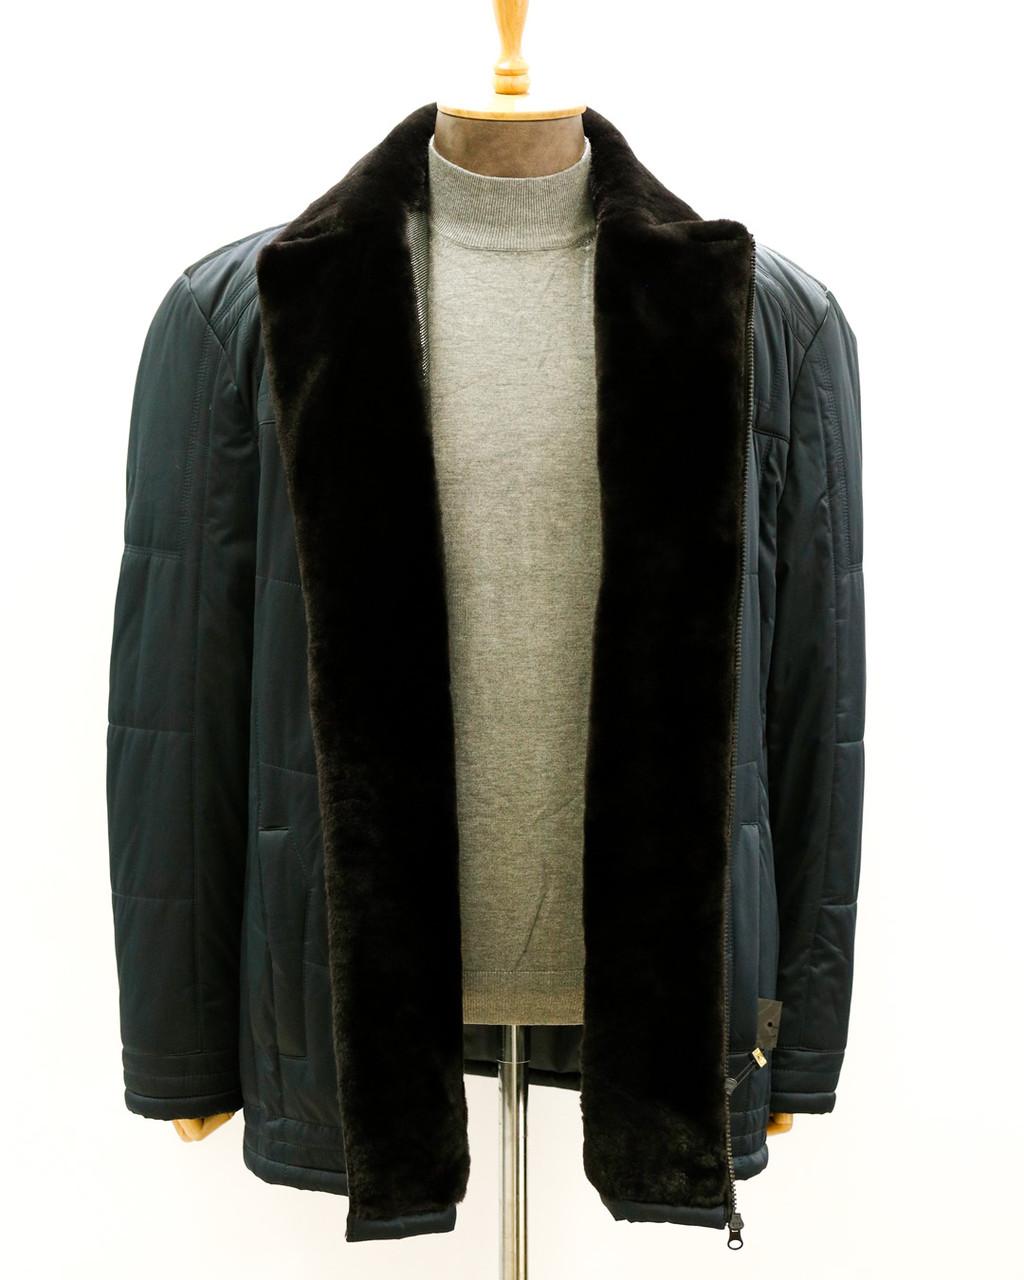 Мужская зимняя куртка «UM&H 45542322» синий, фото 1